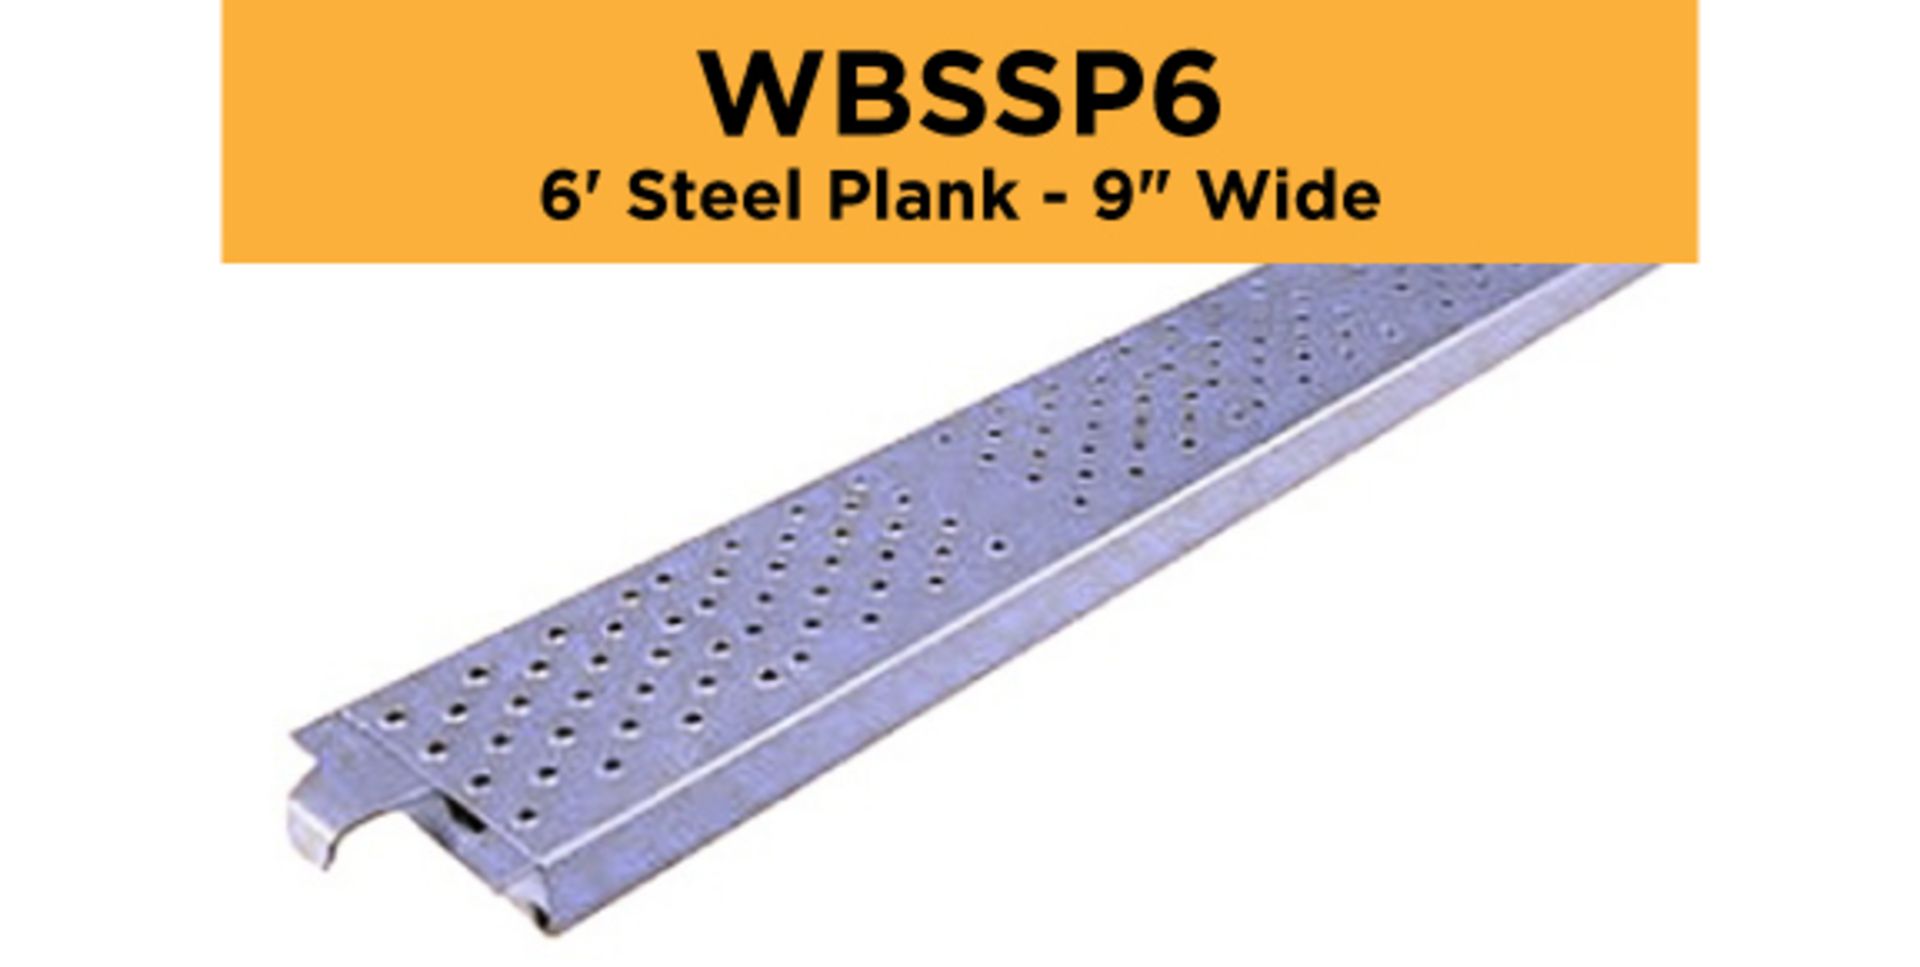 Lot of (256) 6' Steel Plank - 9" Wide - Bay Length 72" (1.83M); Type: WBSSP6 - (4) Racks Per Lot -